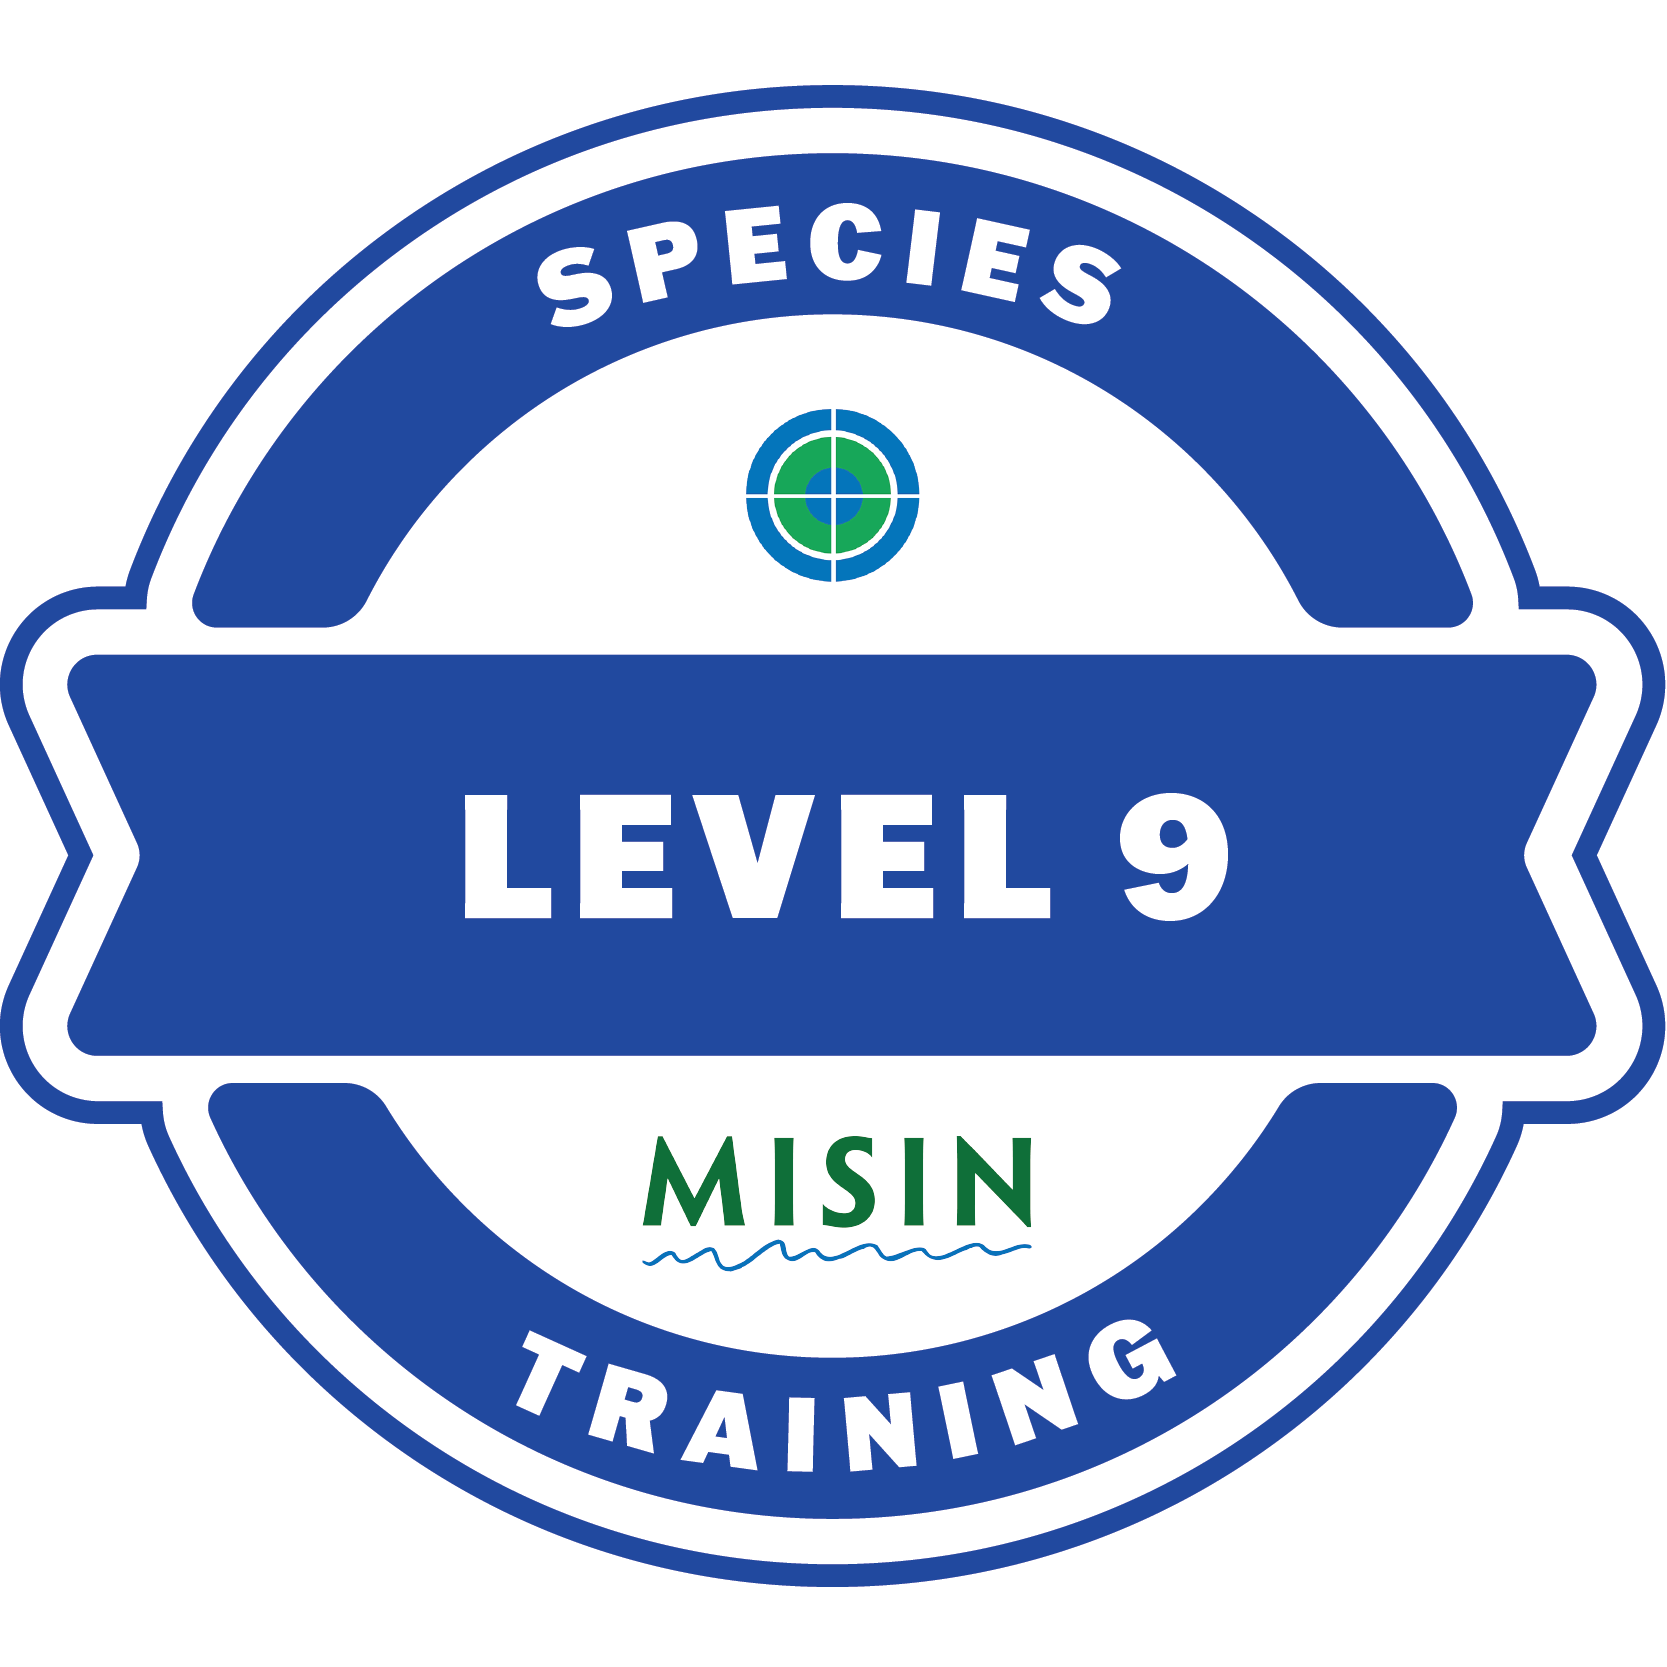 Species Training Level 9